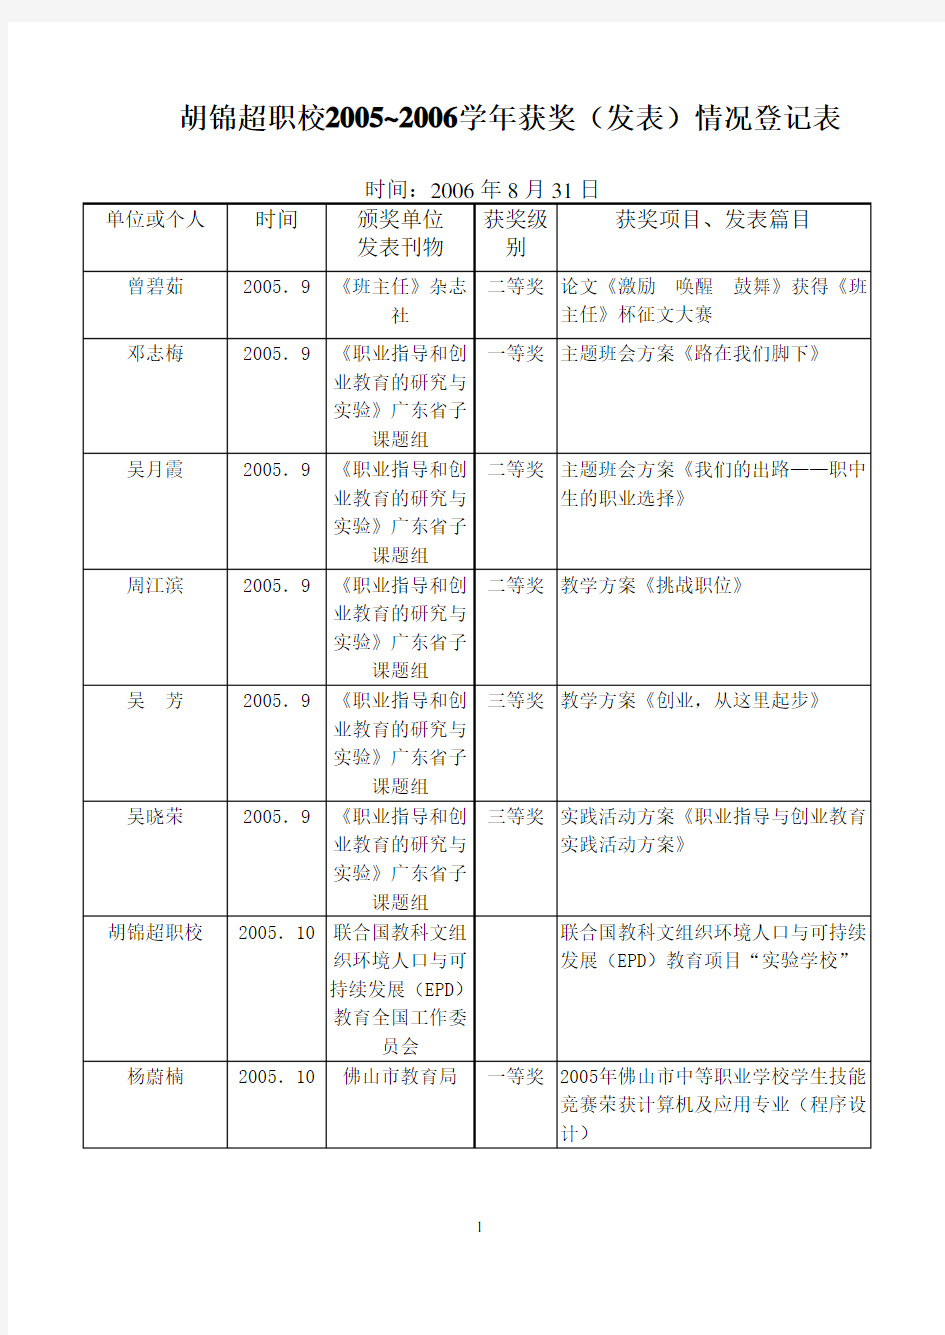 胡锦超职校2005~2006学年获奖(发表)情况登记表